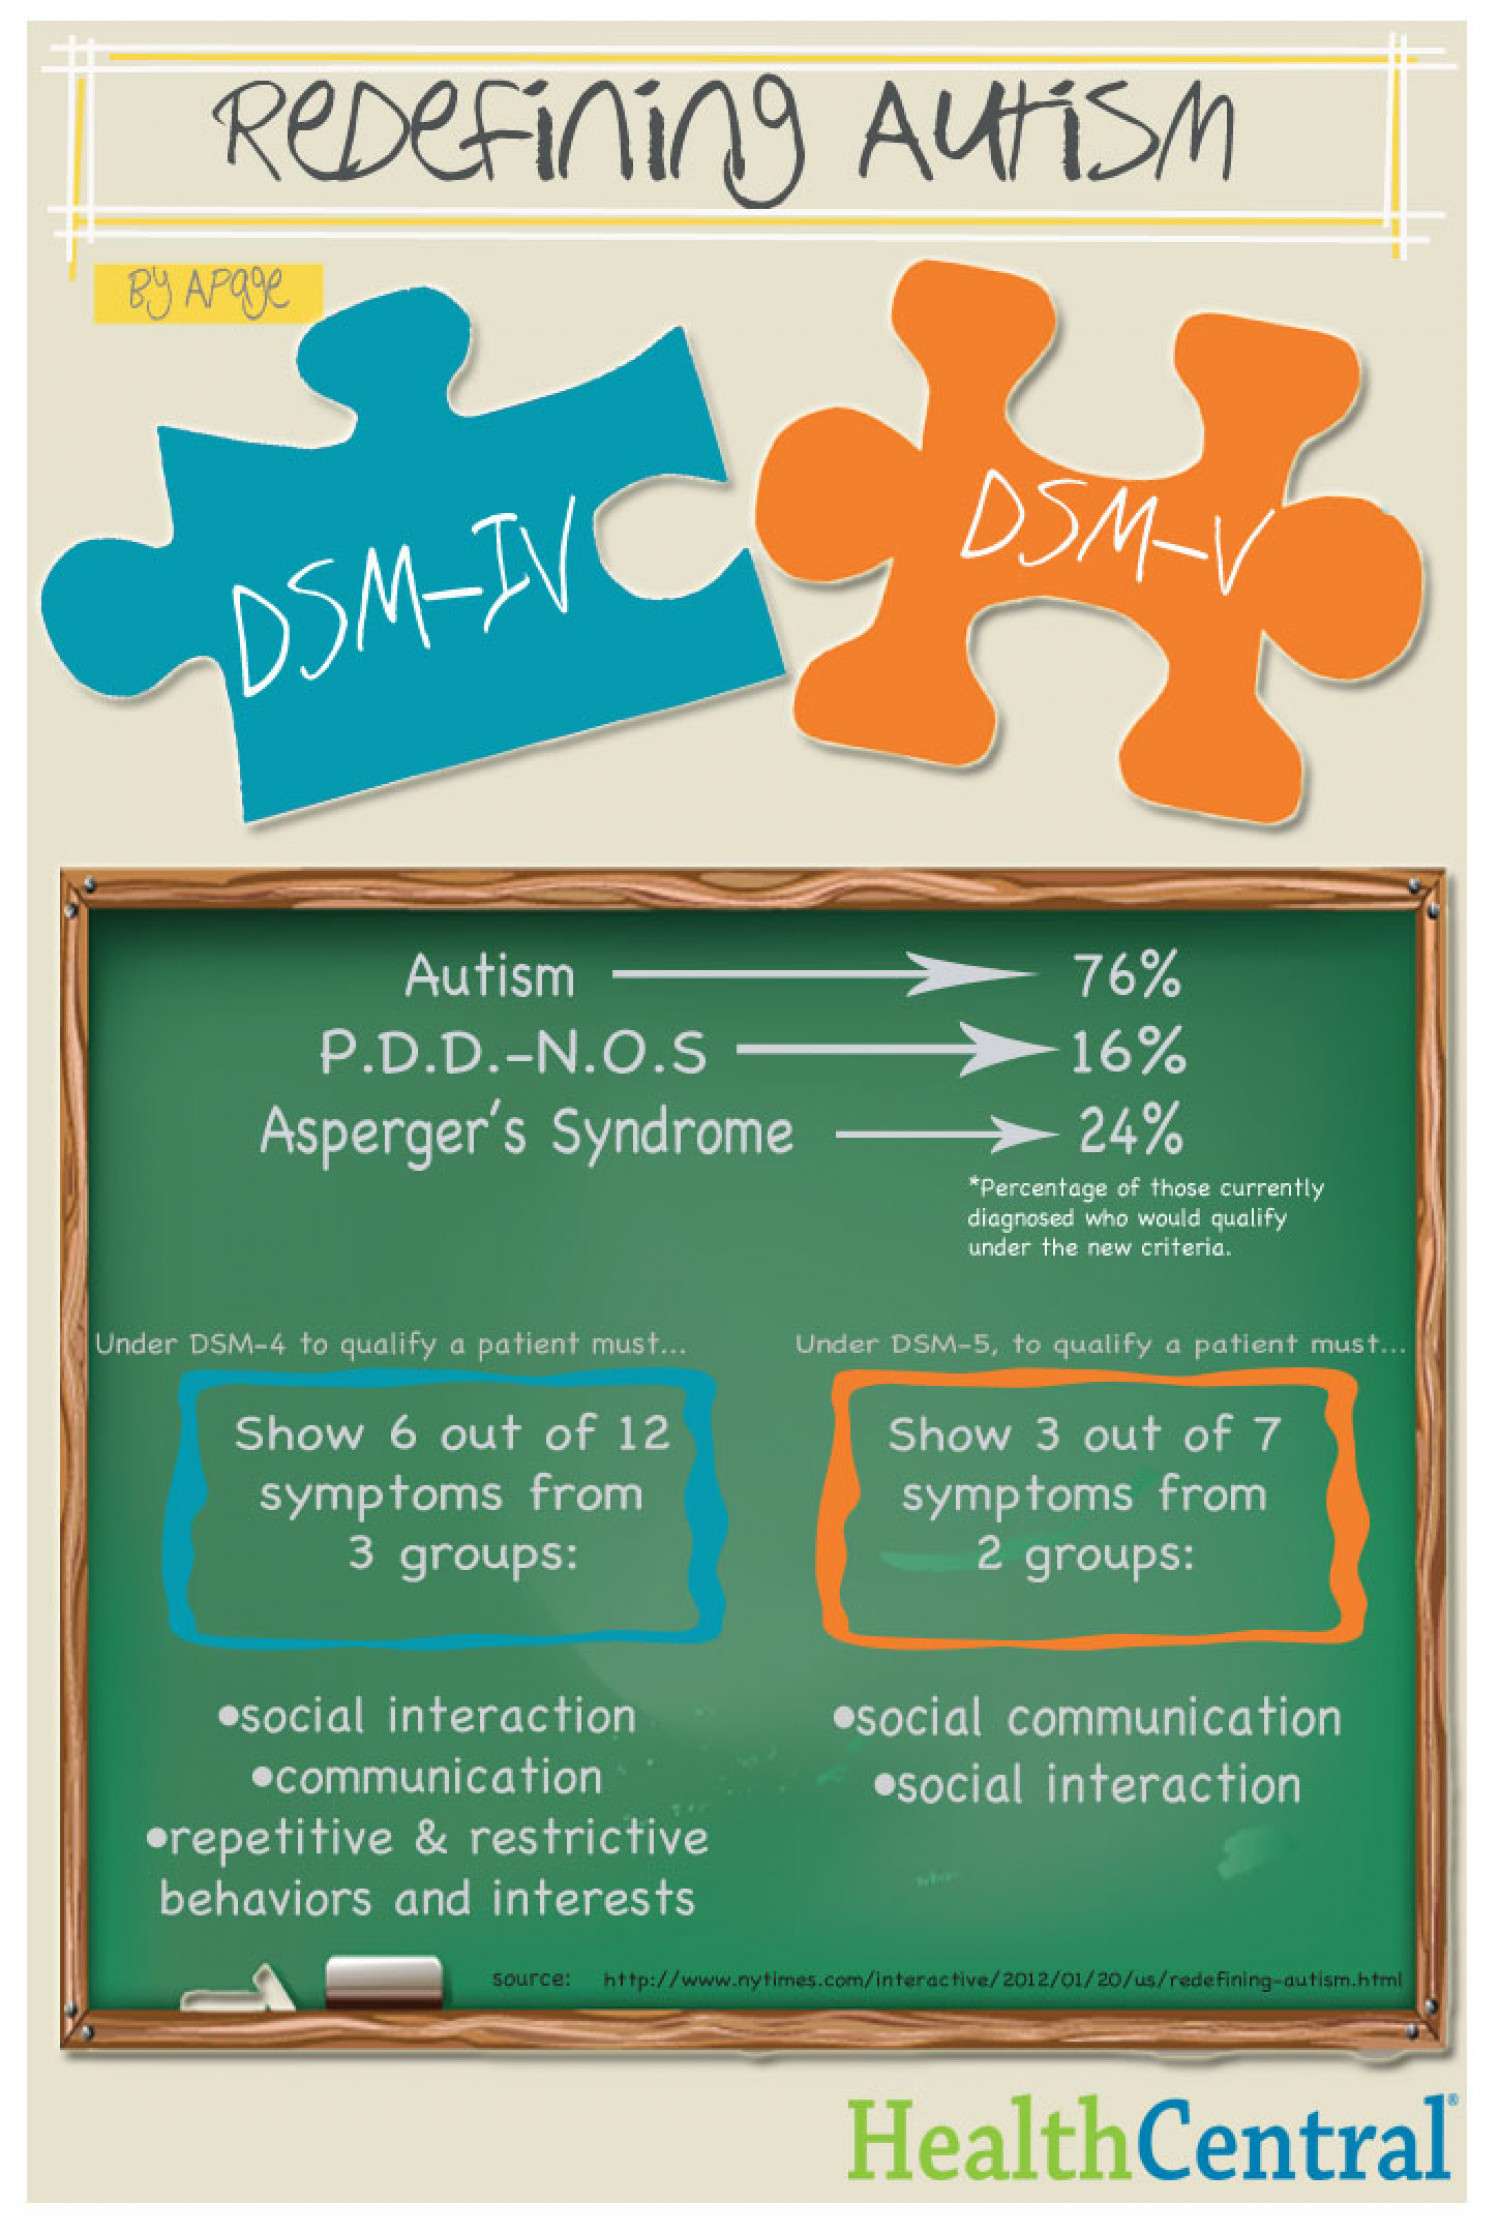 Redefining Autism: DSM